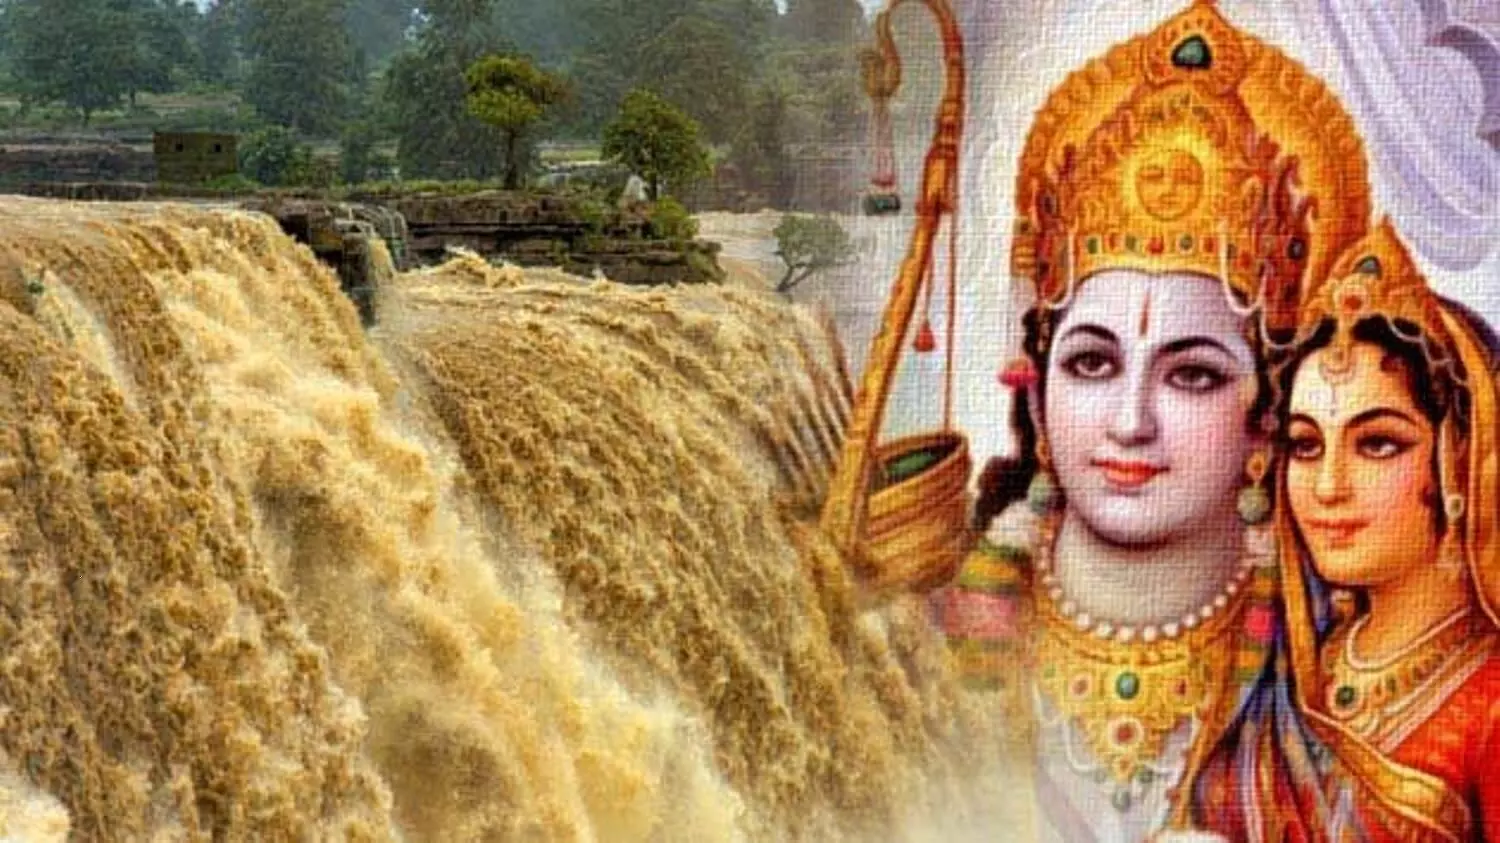 Chitrakoot News: पावन नगरी चित्रकूट के कण-कण में बसे हैं भगवान श्रीराम